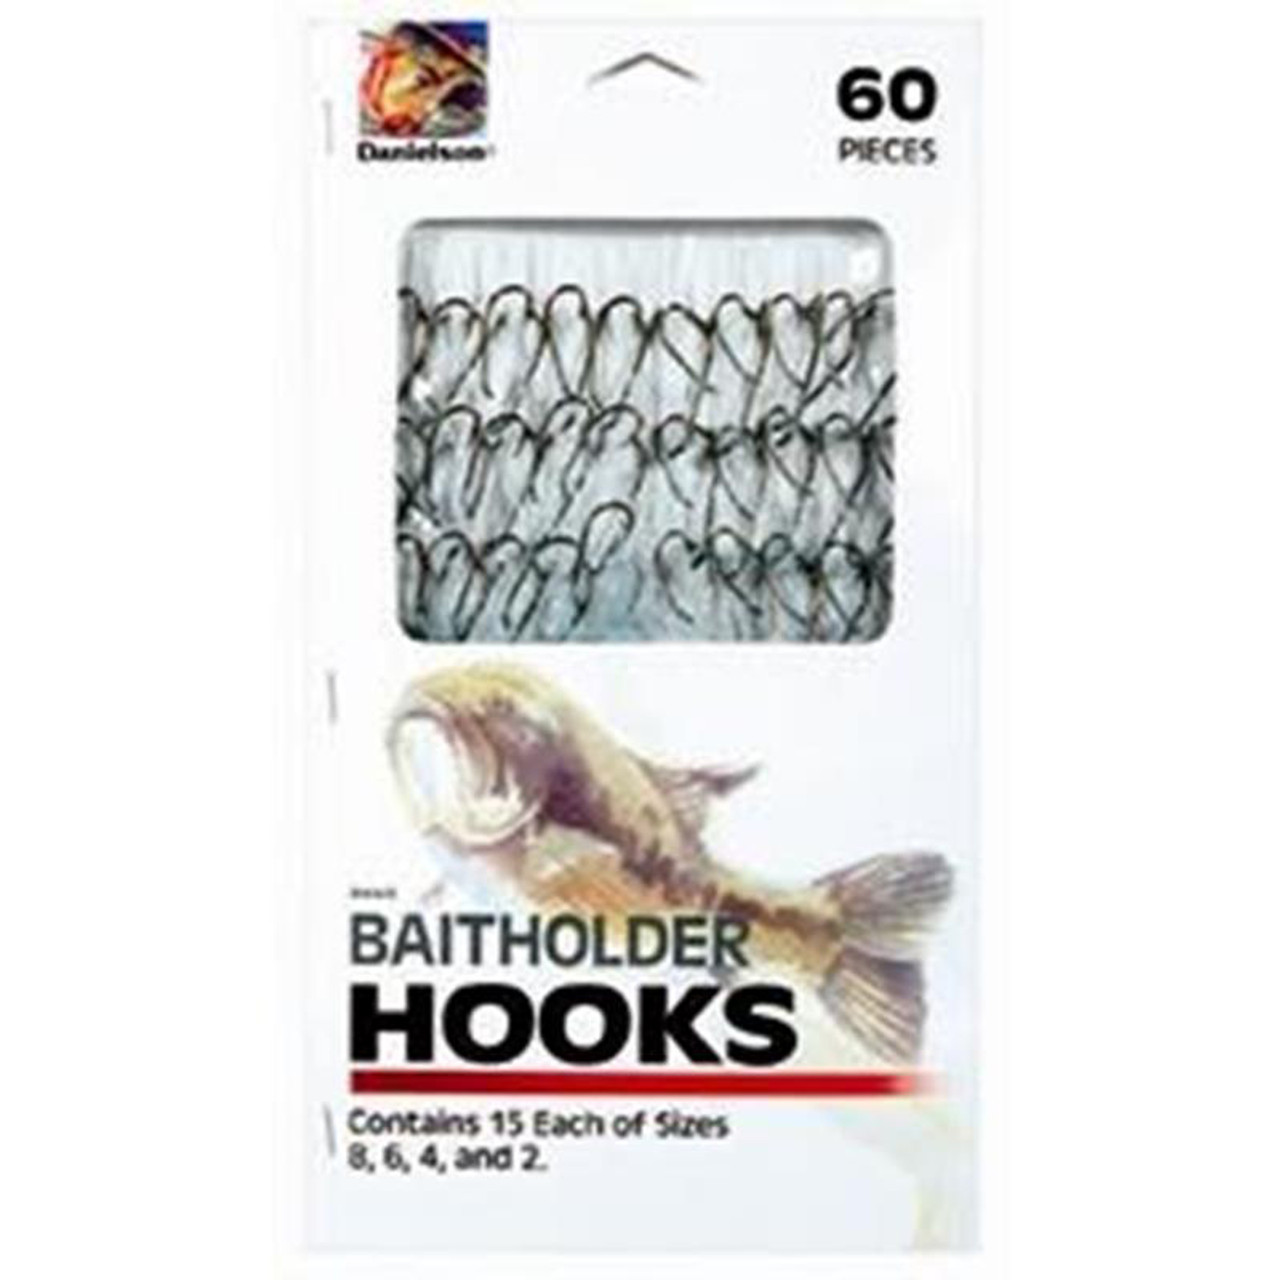 Baithholder Snelled Hooks - Size #14-20 Packs - Item # 205